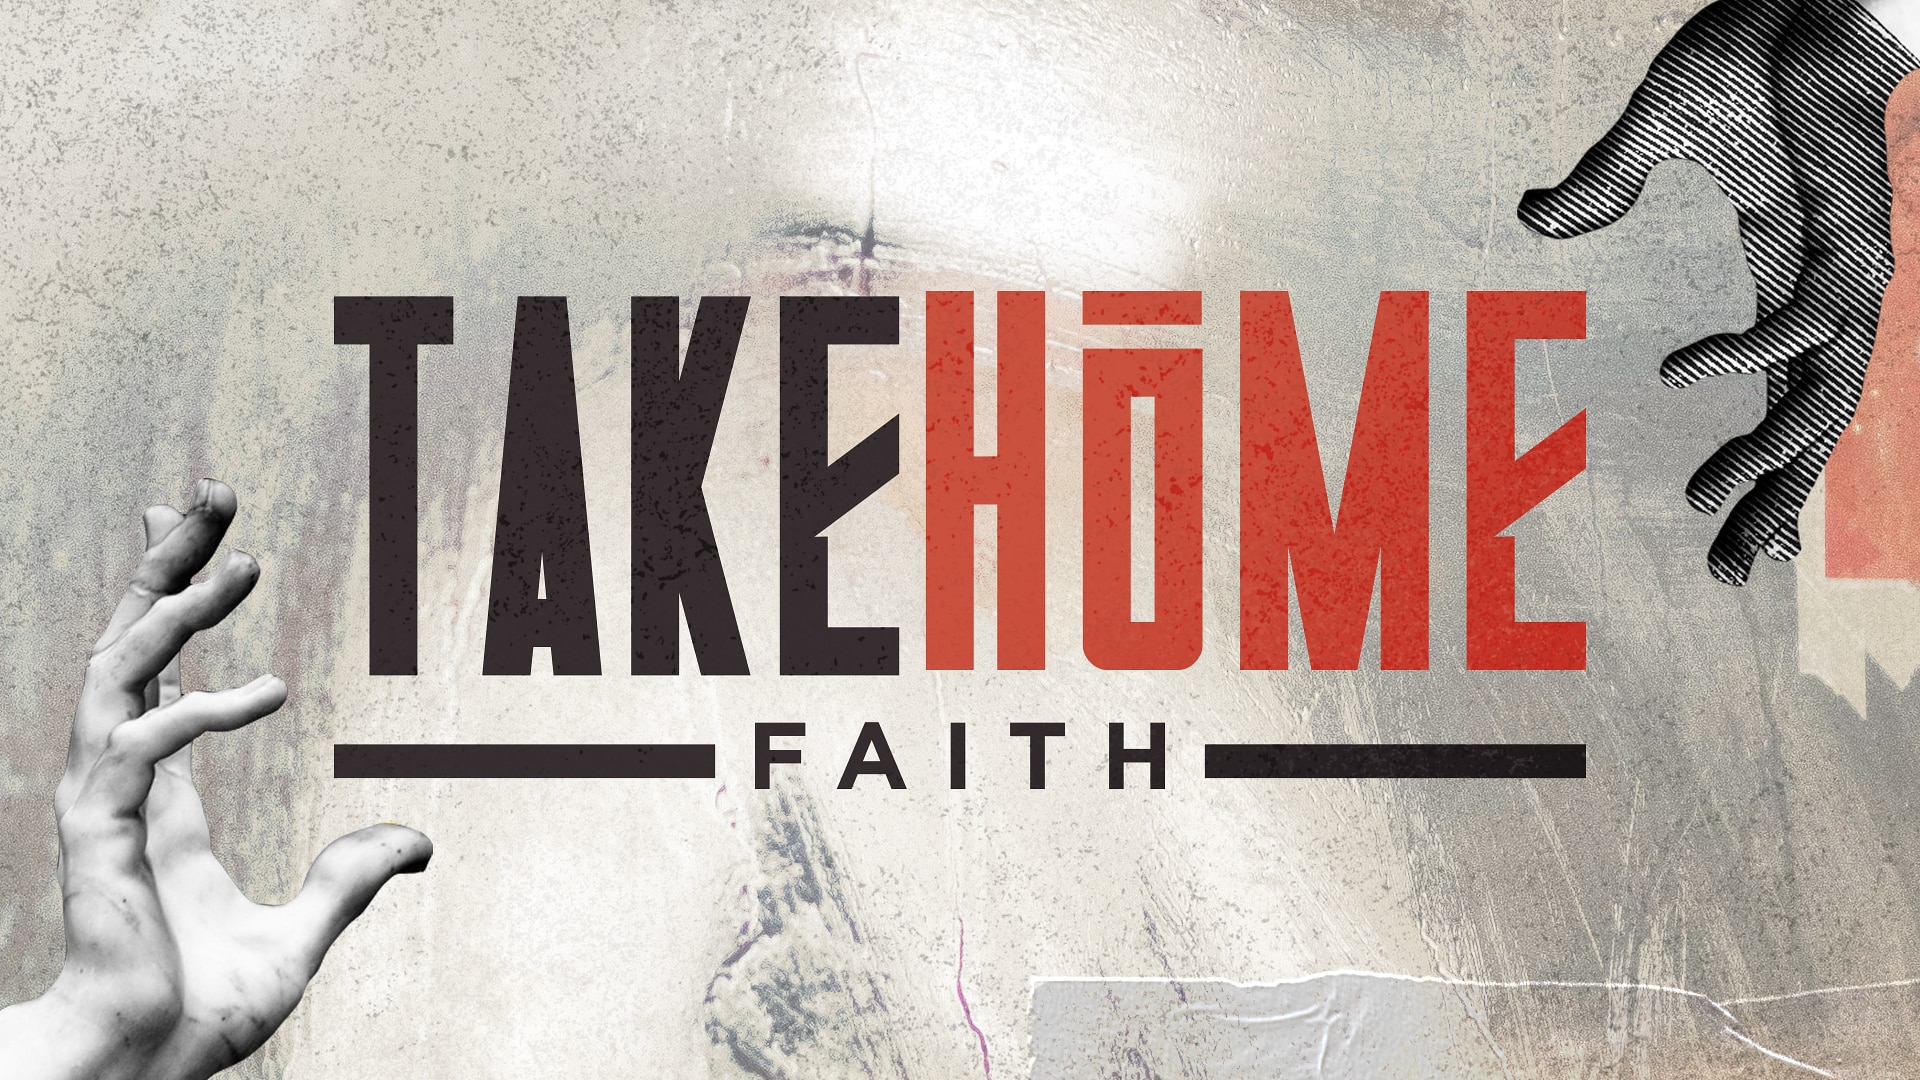 Take Home Faith